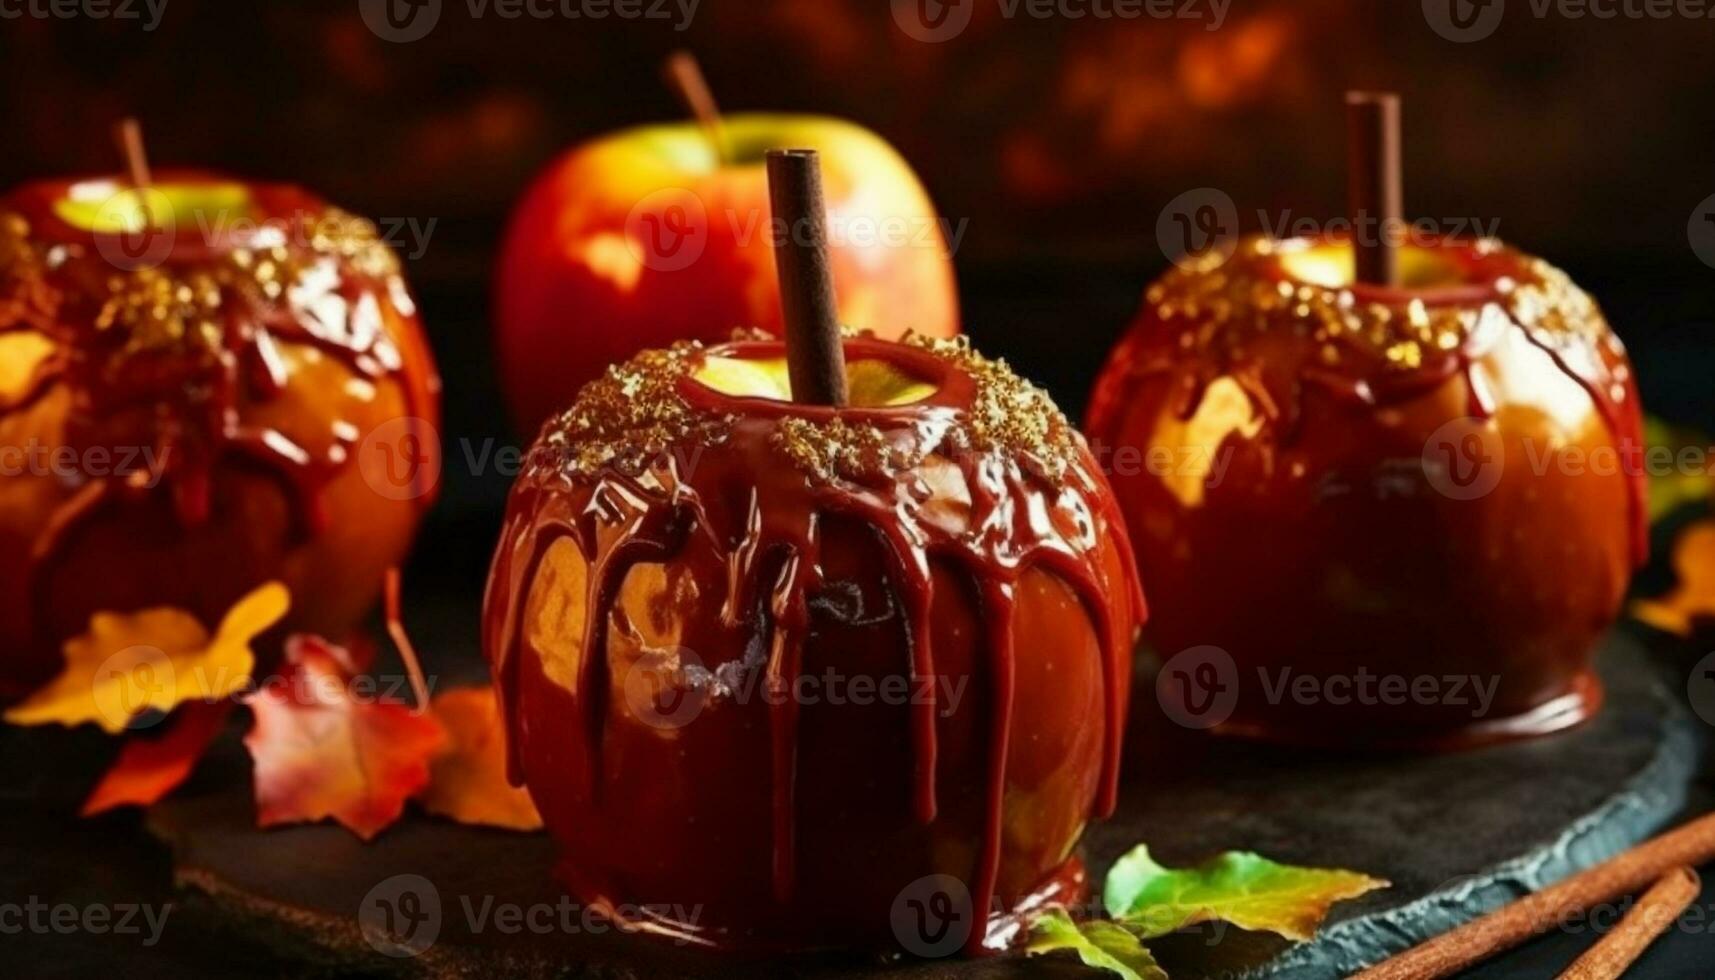 Autumn apple dessert, Halloween candy, sweet pumpkin indulgence, homemade gourmet generated by AI photo